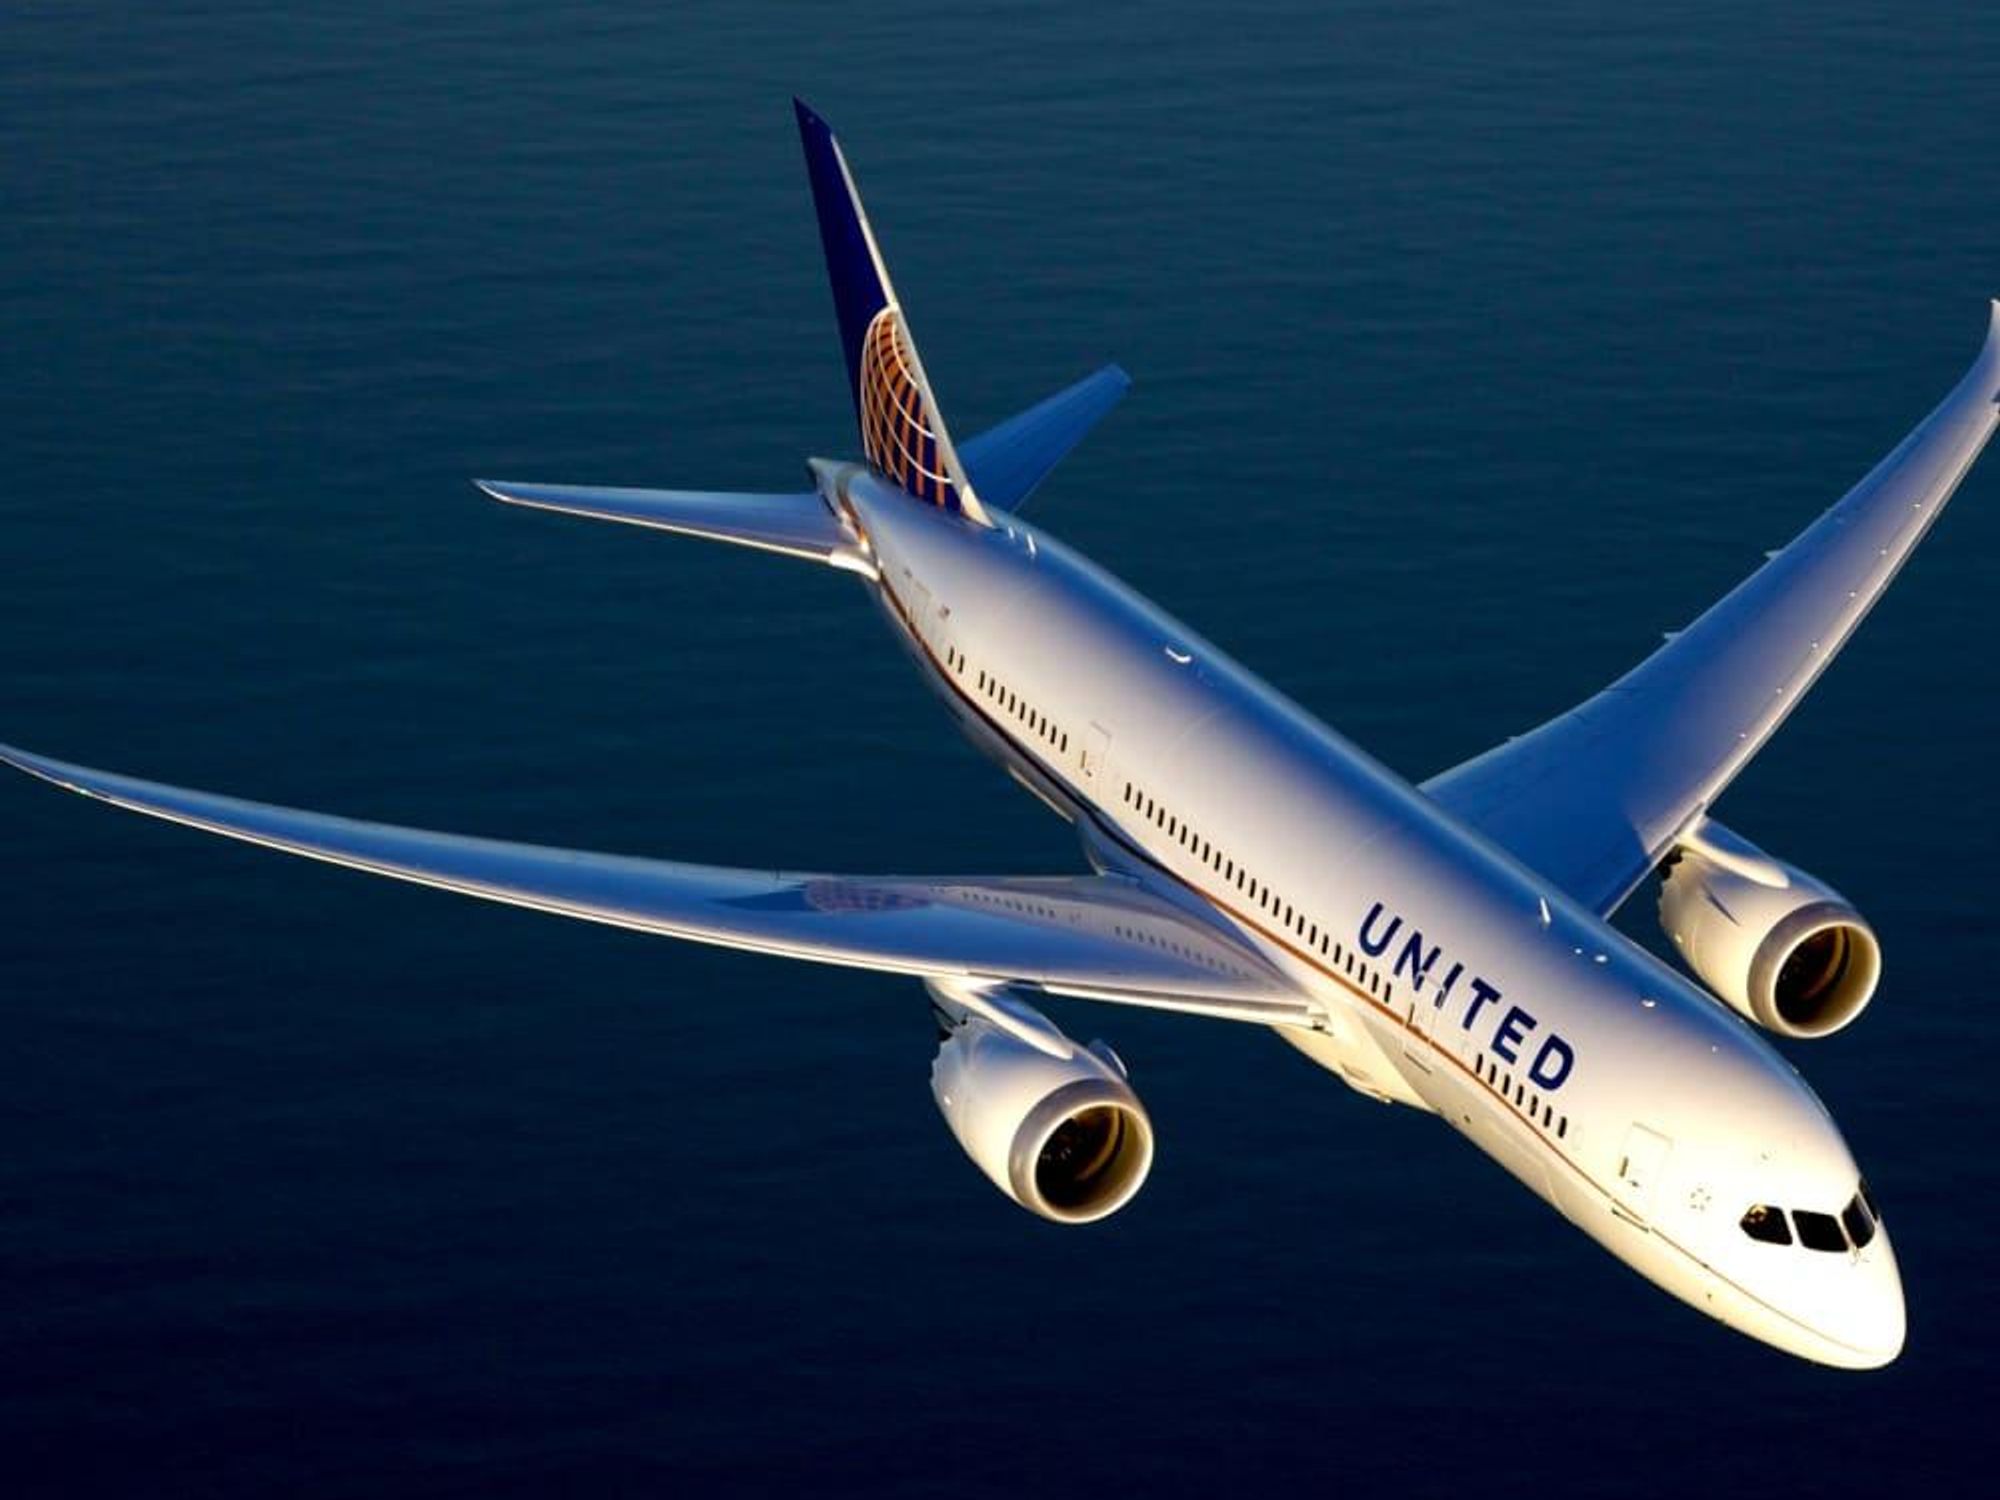 United Airlines Boeing 787 Dreamliner, September 2017